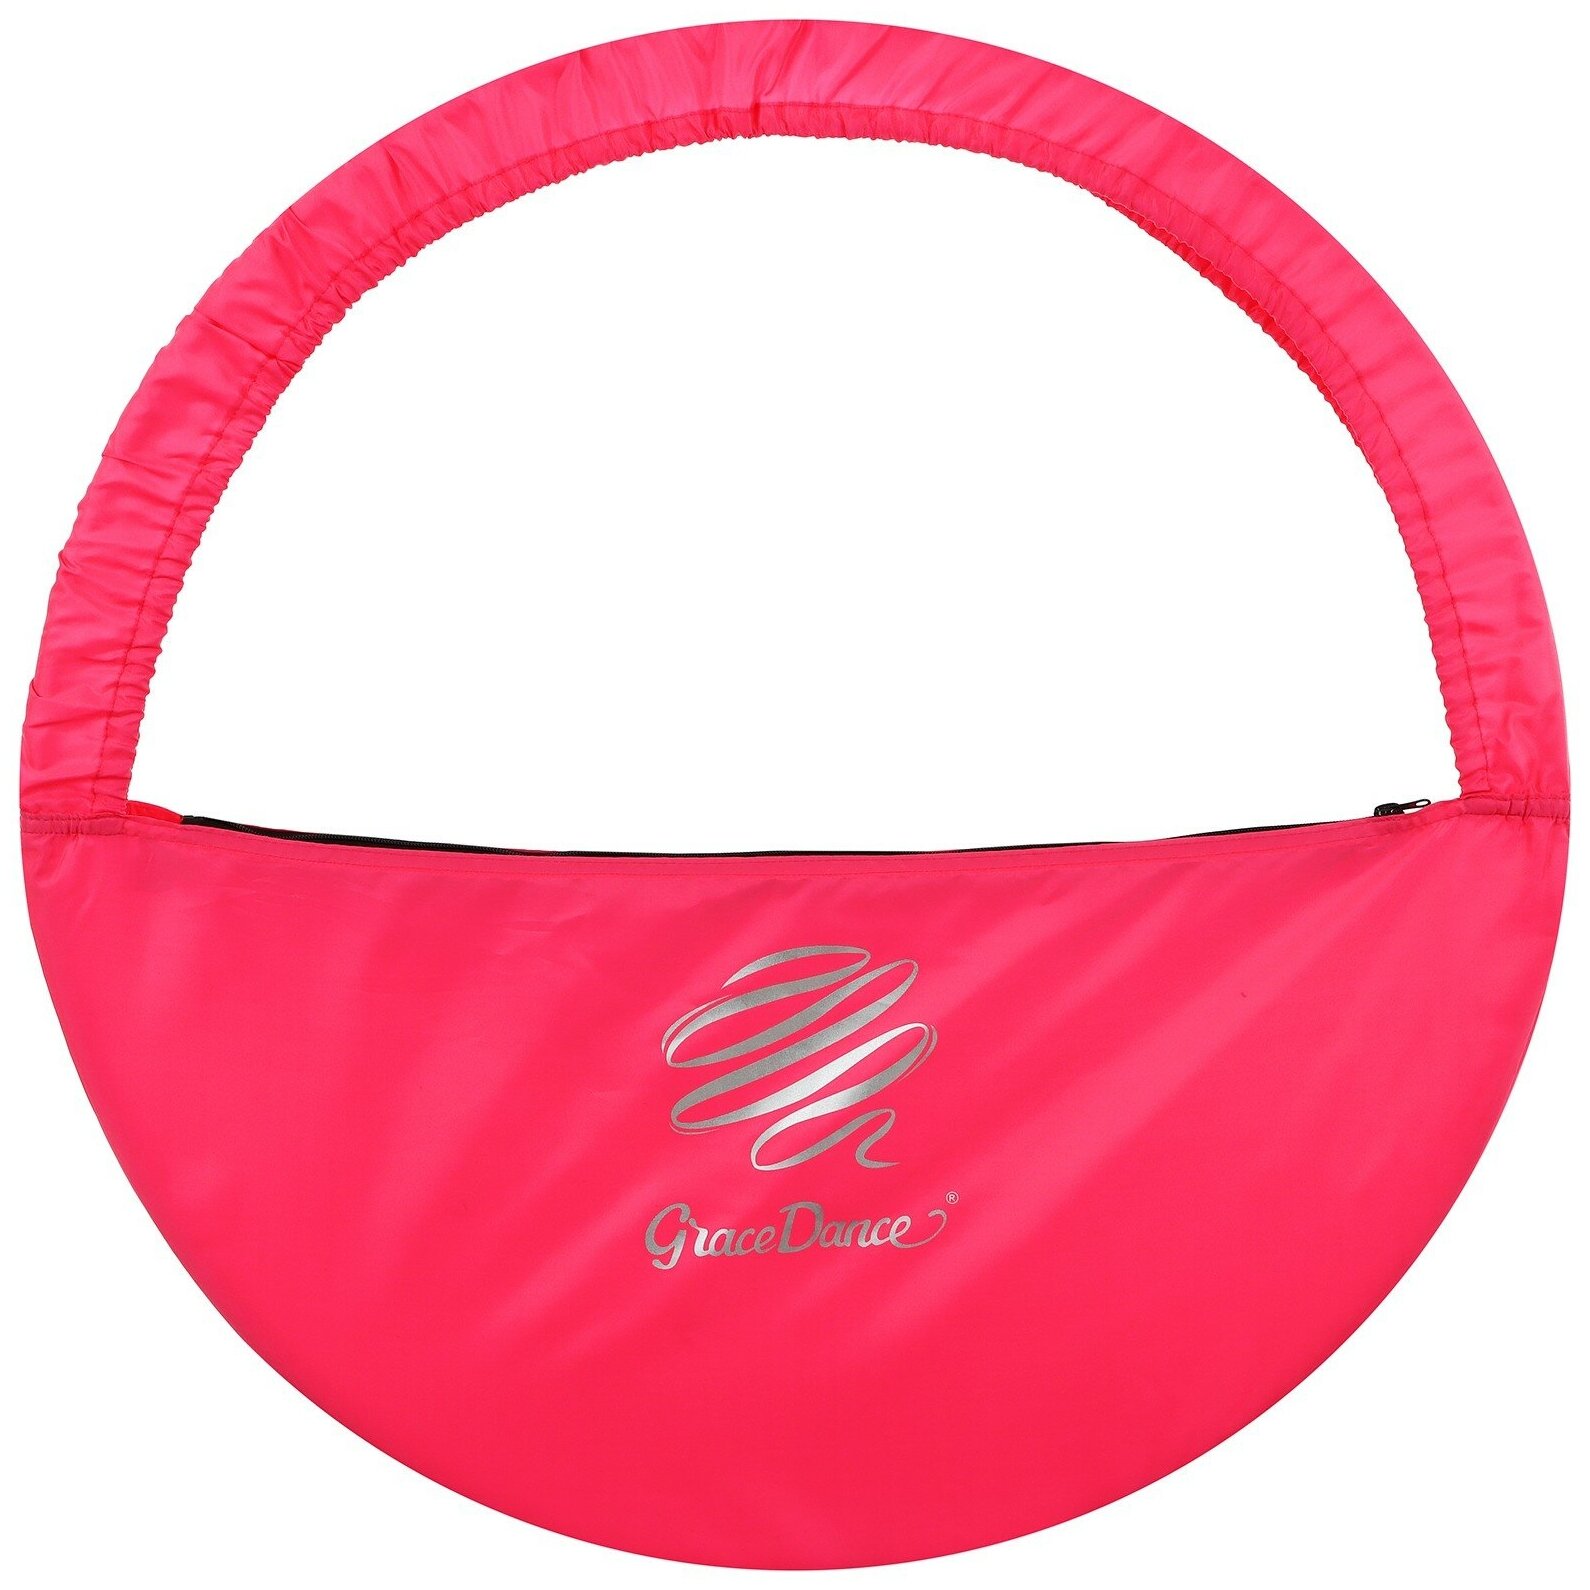 Чехол для обруча, диаметр 70 см, цвет розовый Grace Dance 10063058 .